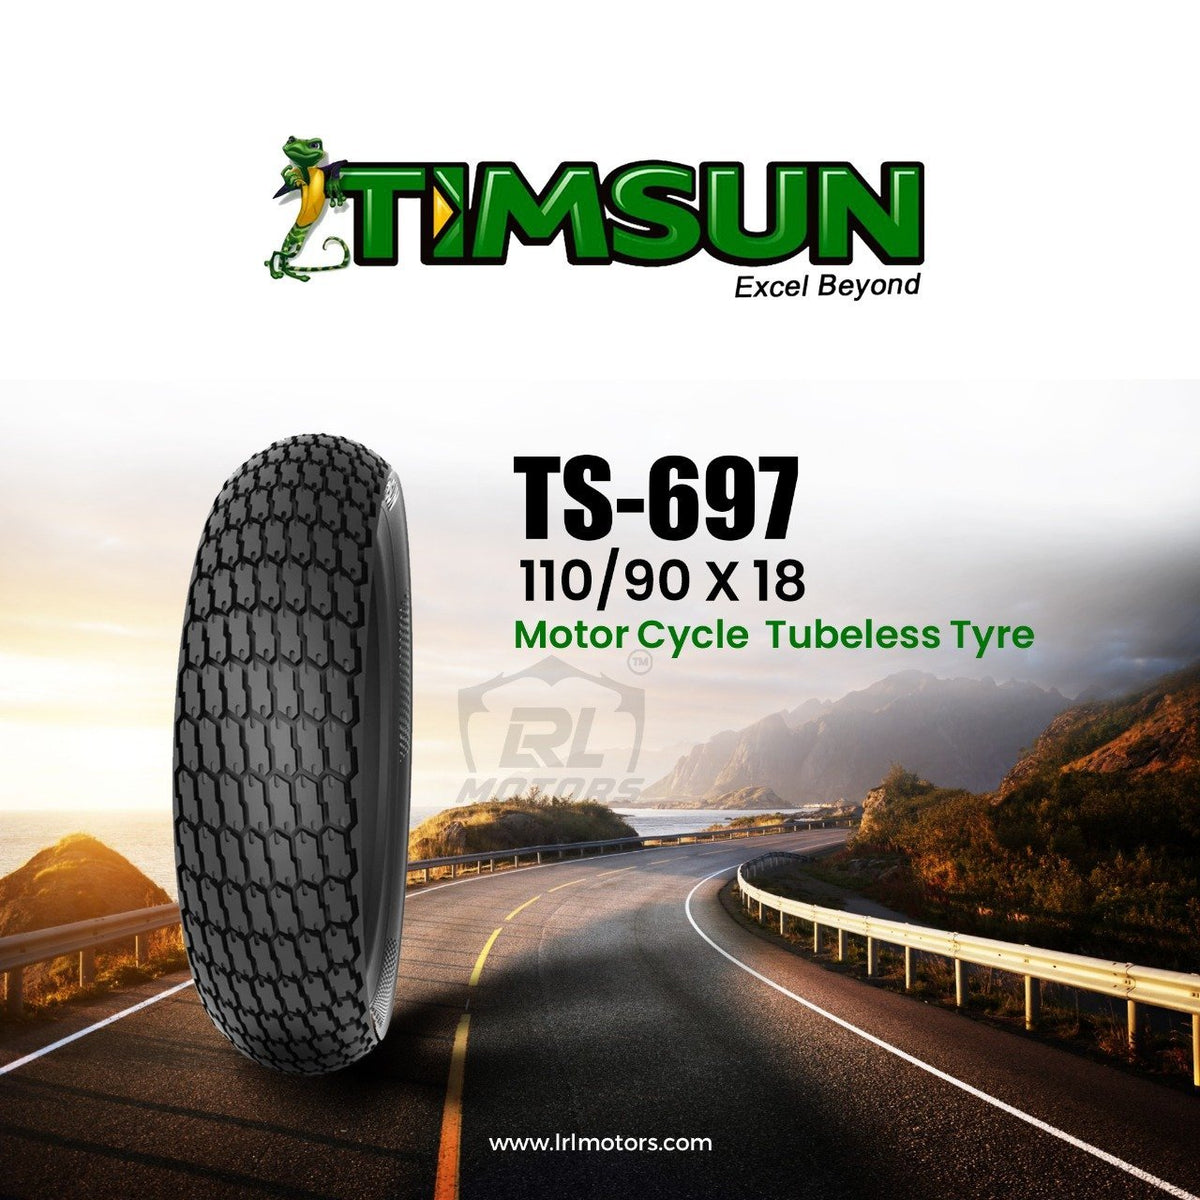 Timsun 110/90 X 18 - TS-697 - LRL Motors